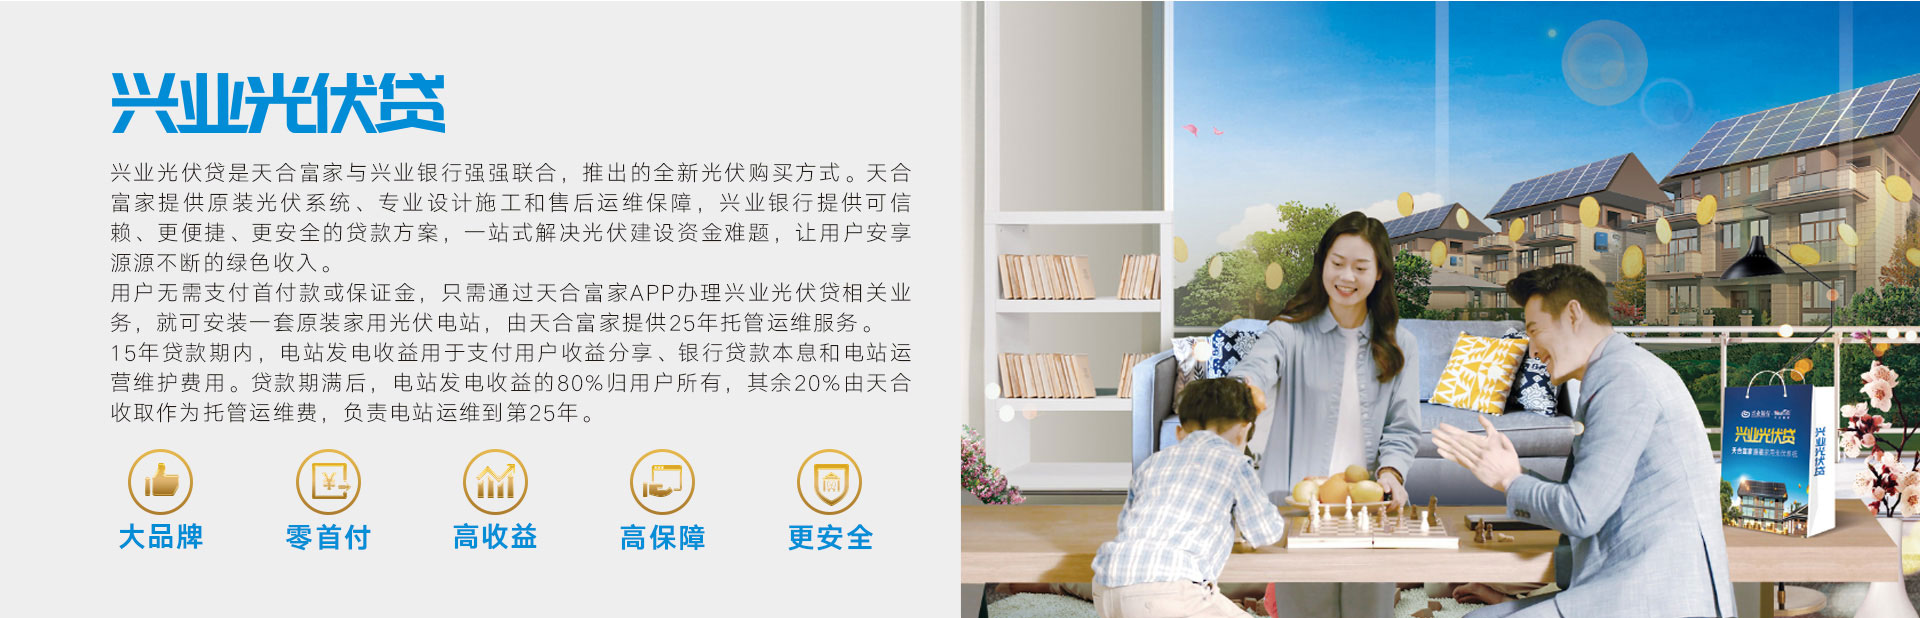 9999js金沙老品牌(中国游)官方网站